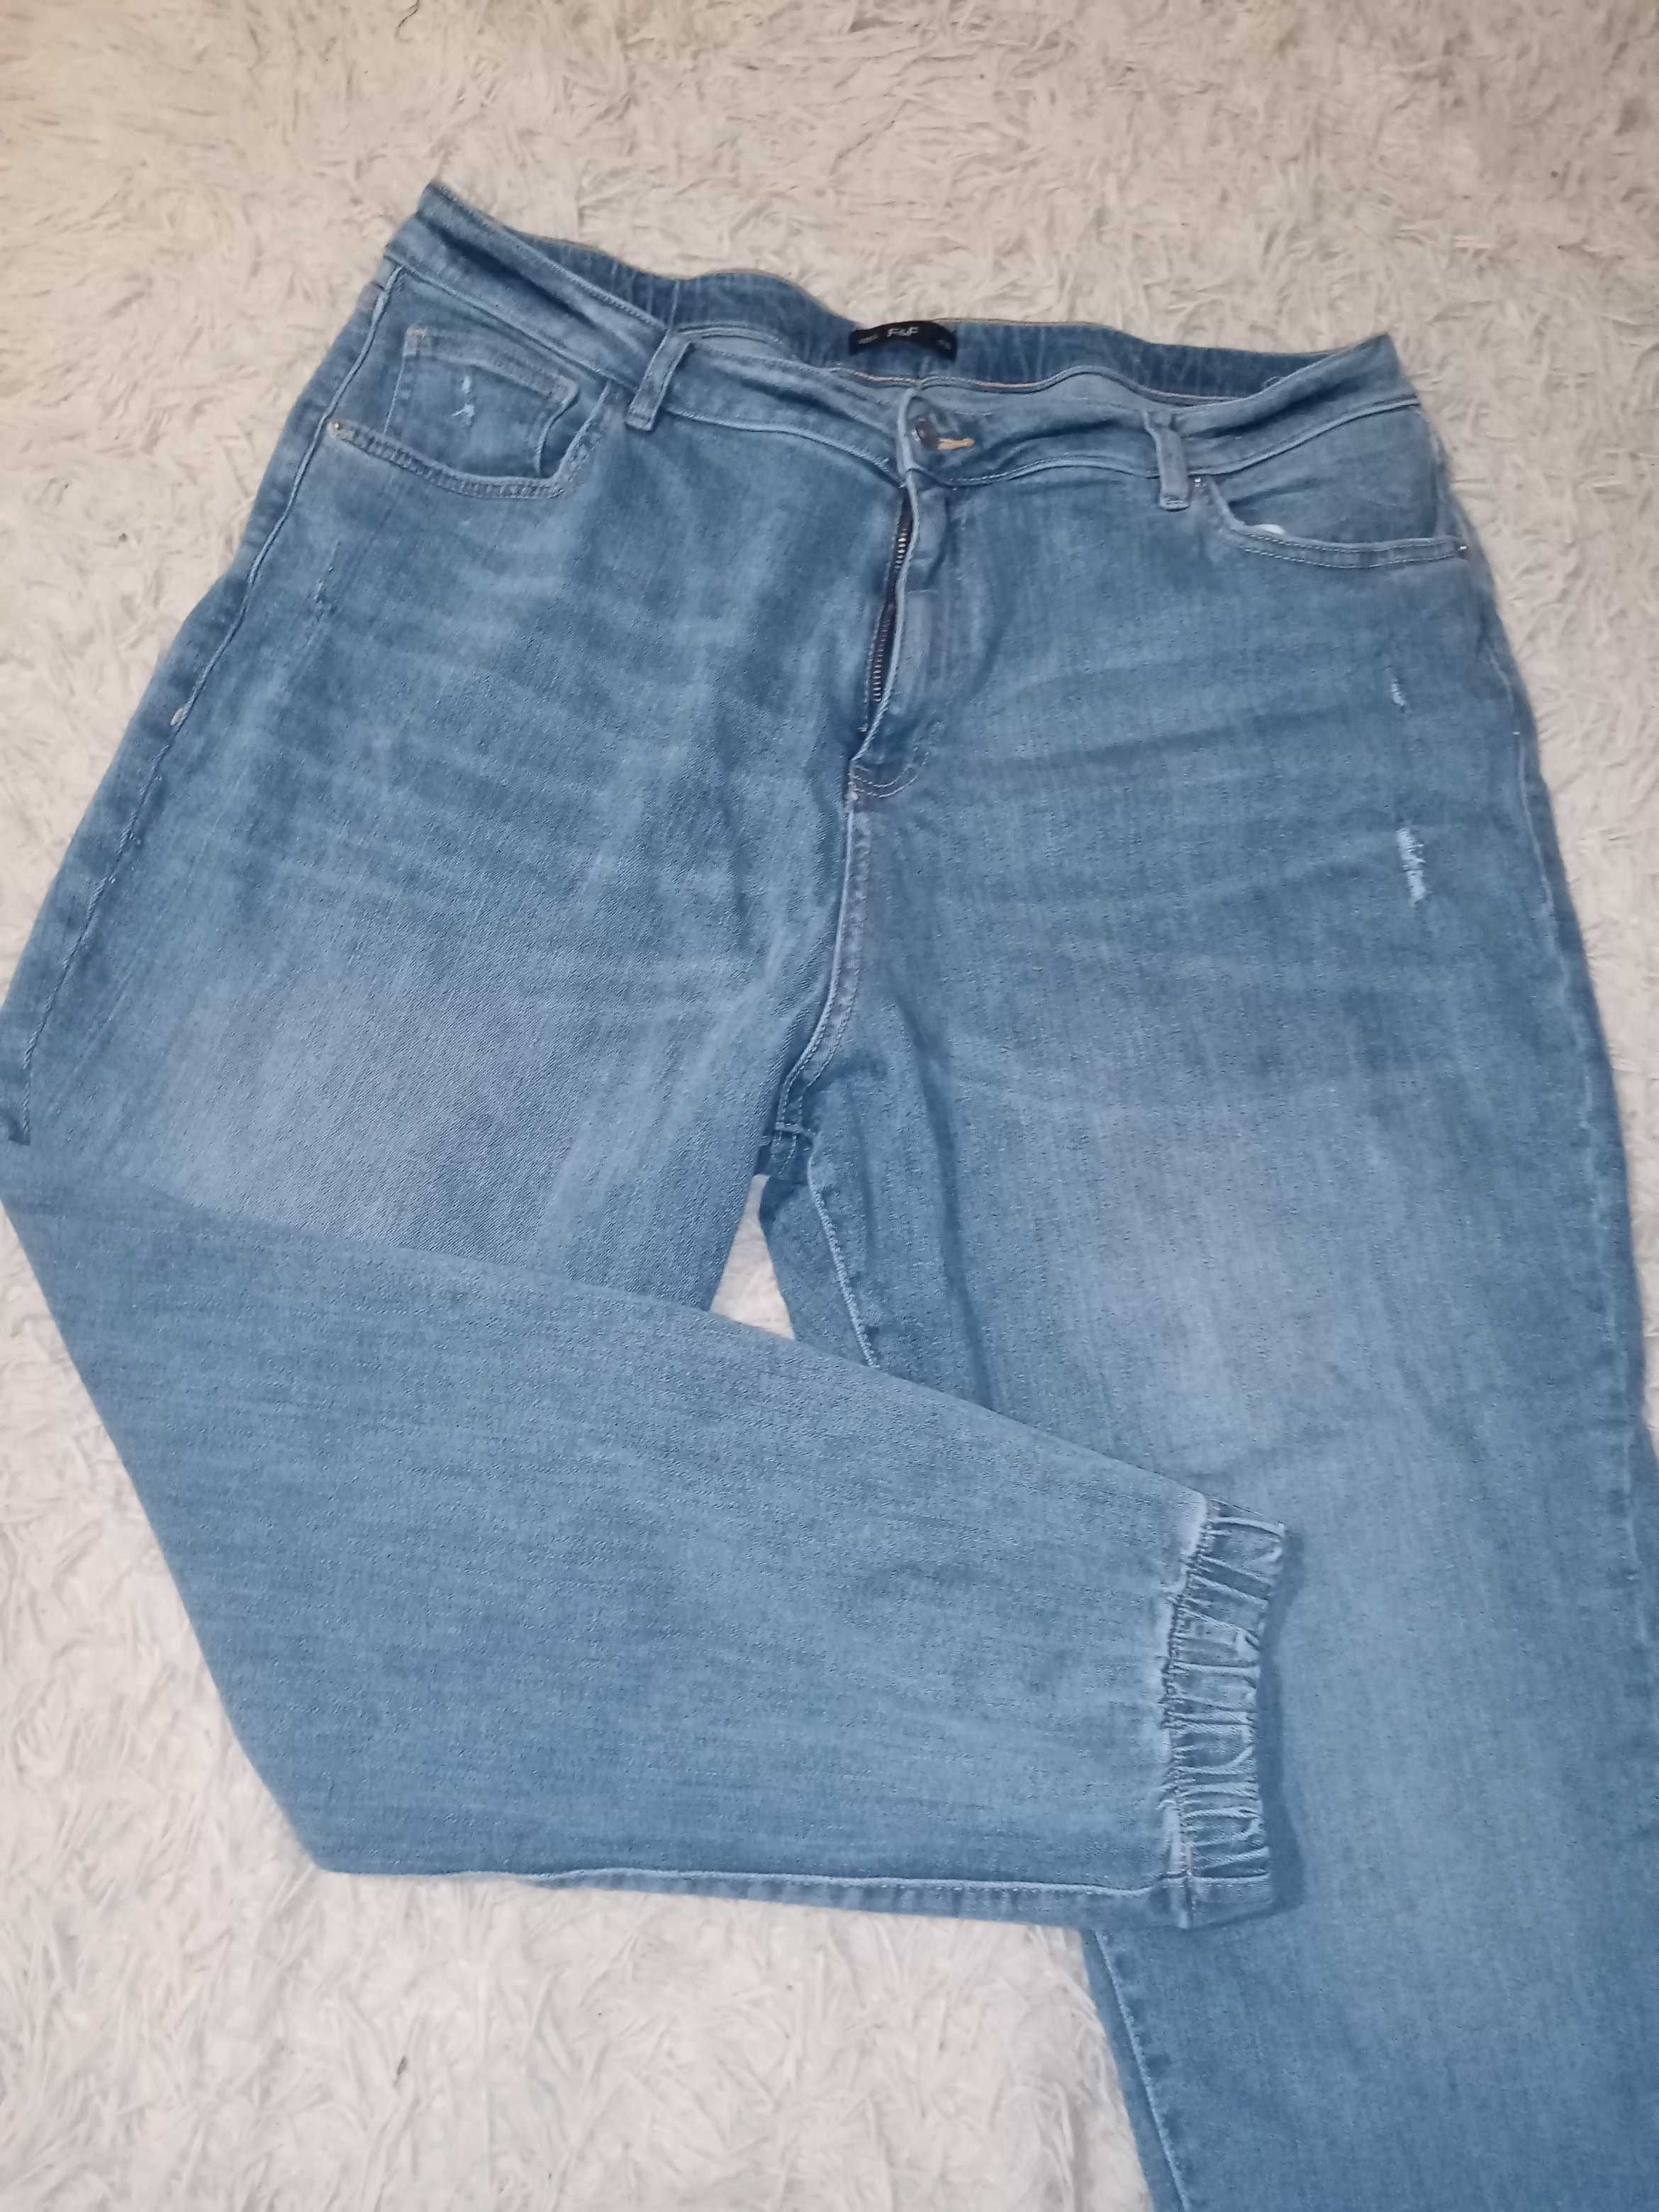 Женские джинсы большого размера 56-60